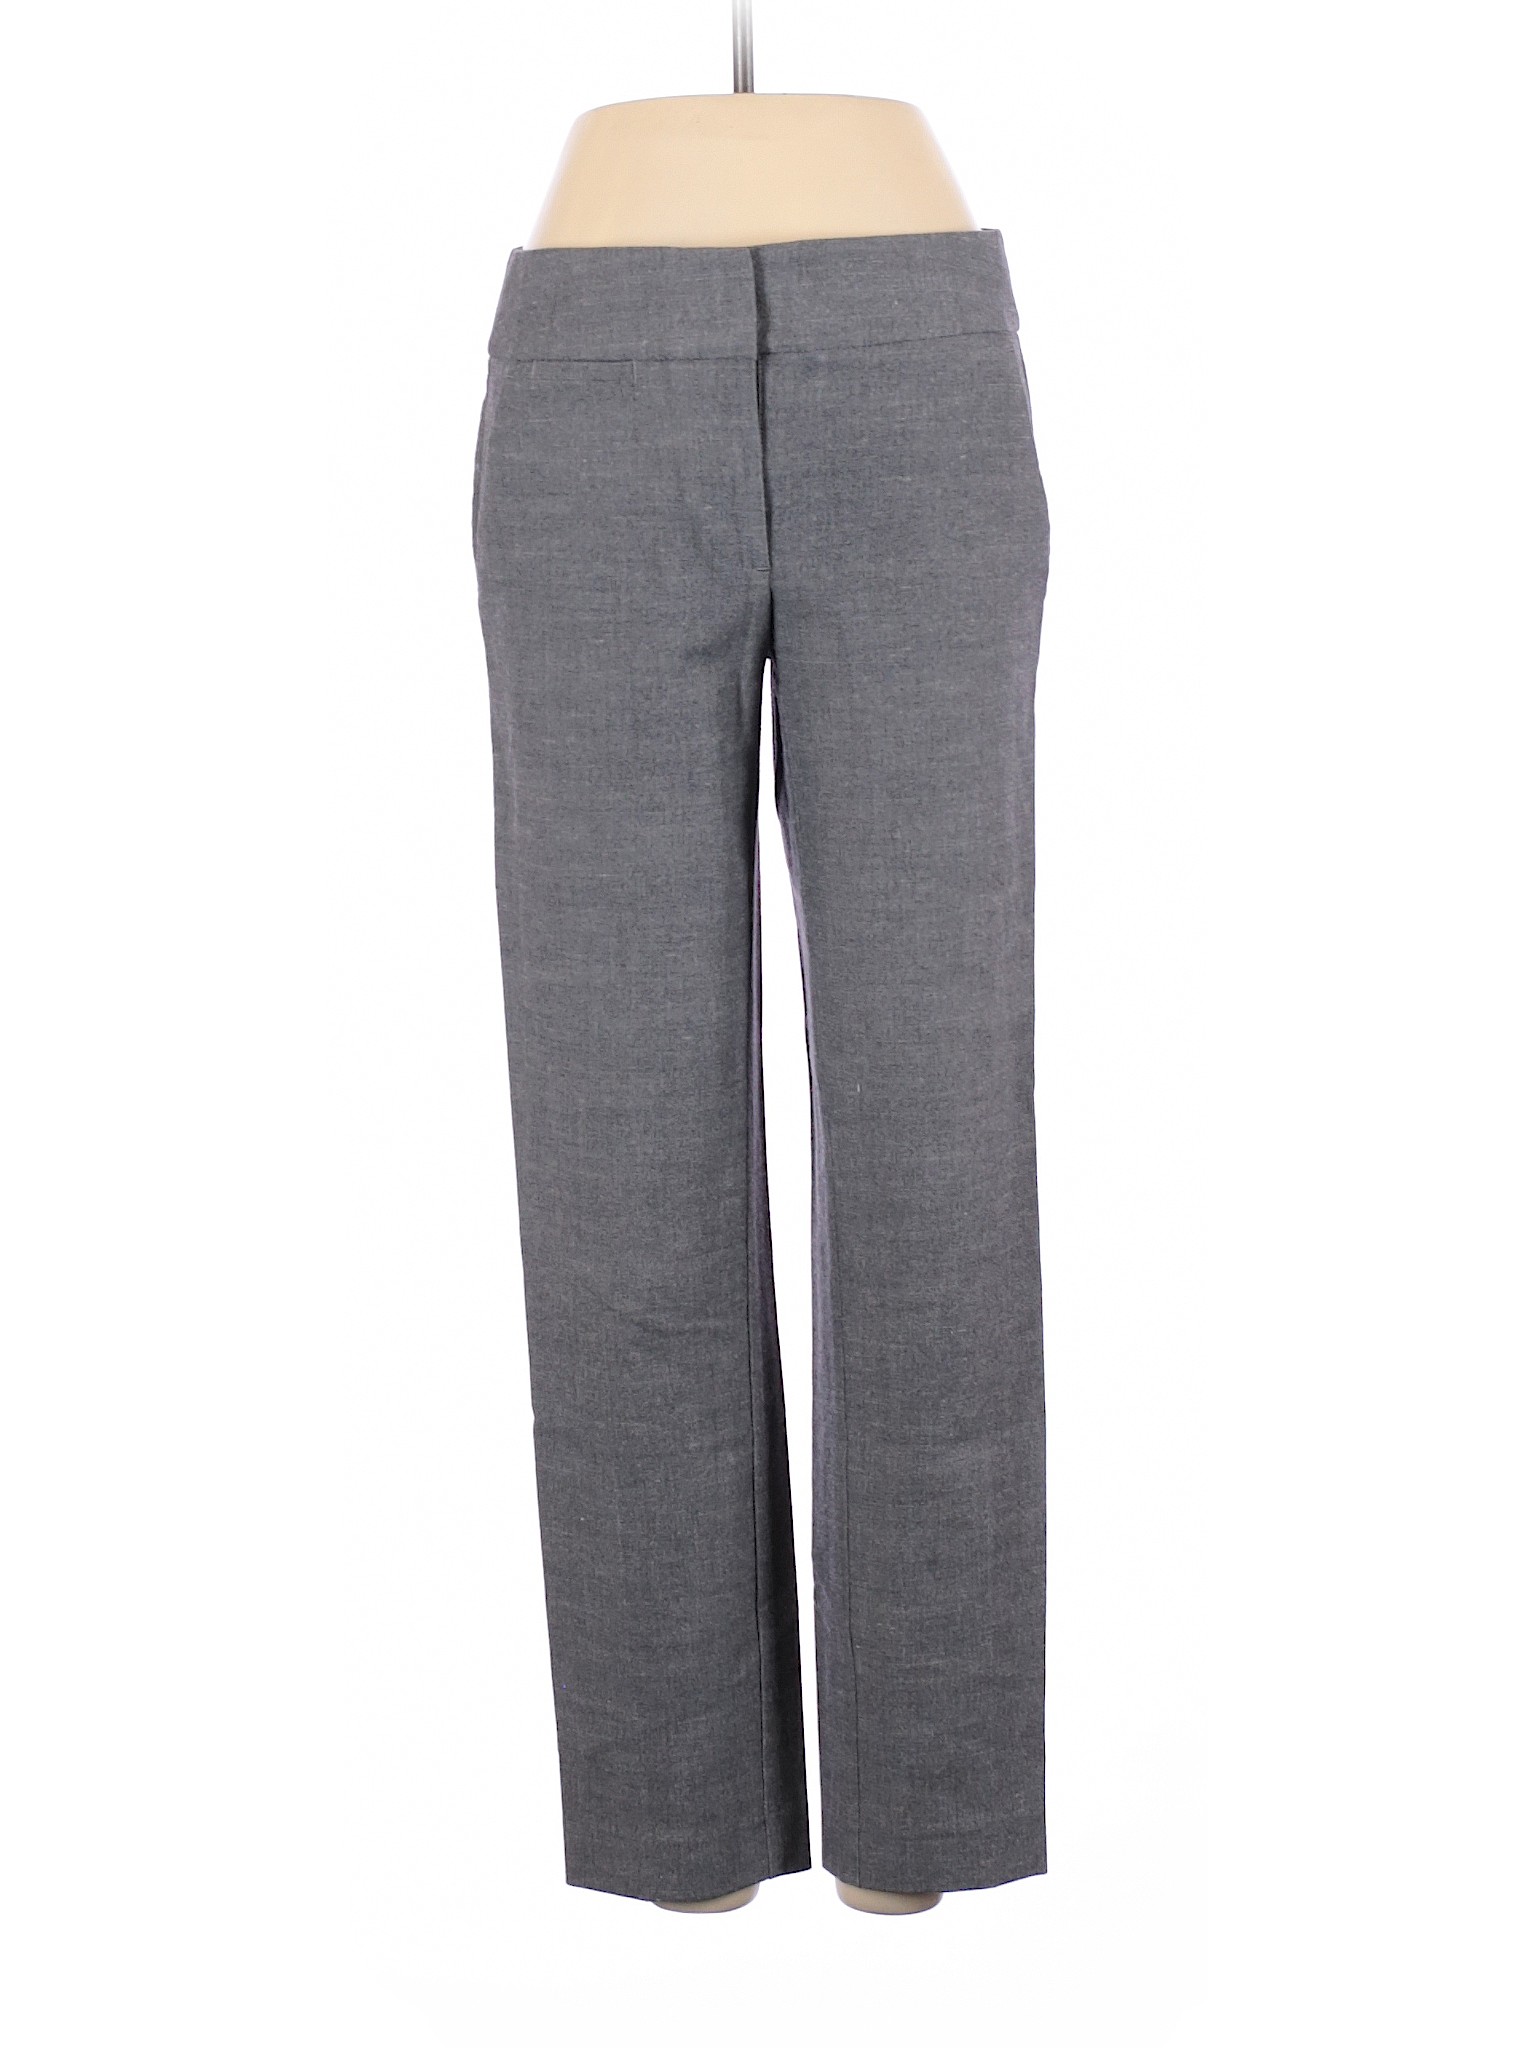 Ann Taylor LOFT Women Gray Dress Pants 2 | eBay